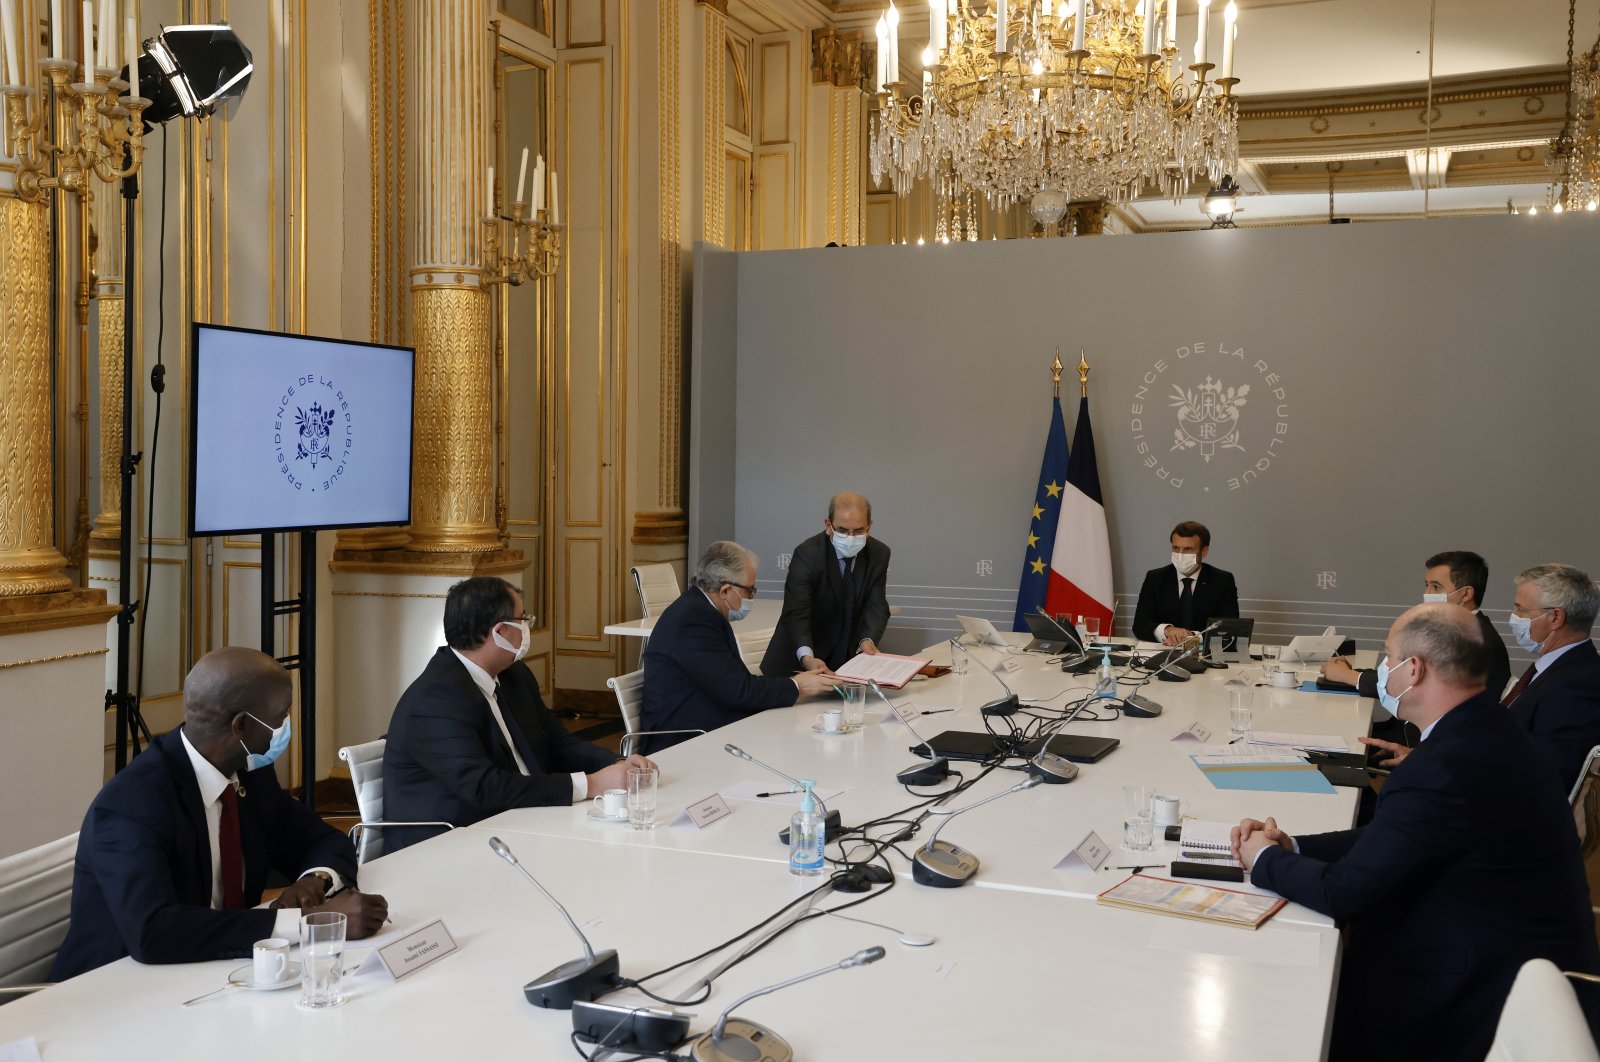 محکومیت «منشور اصول فرانسه در مورد اسلام» از سوی سازمان های اسلامی 